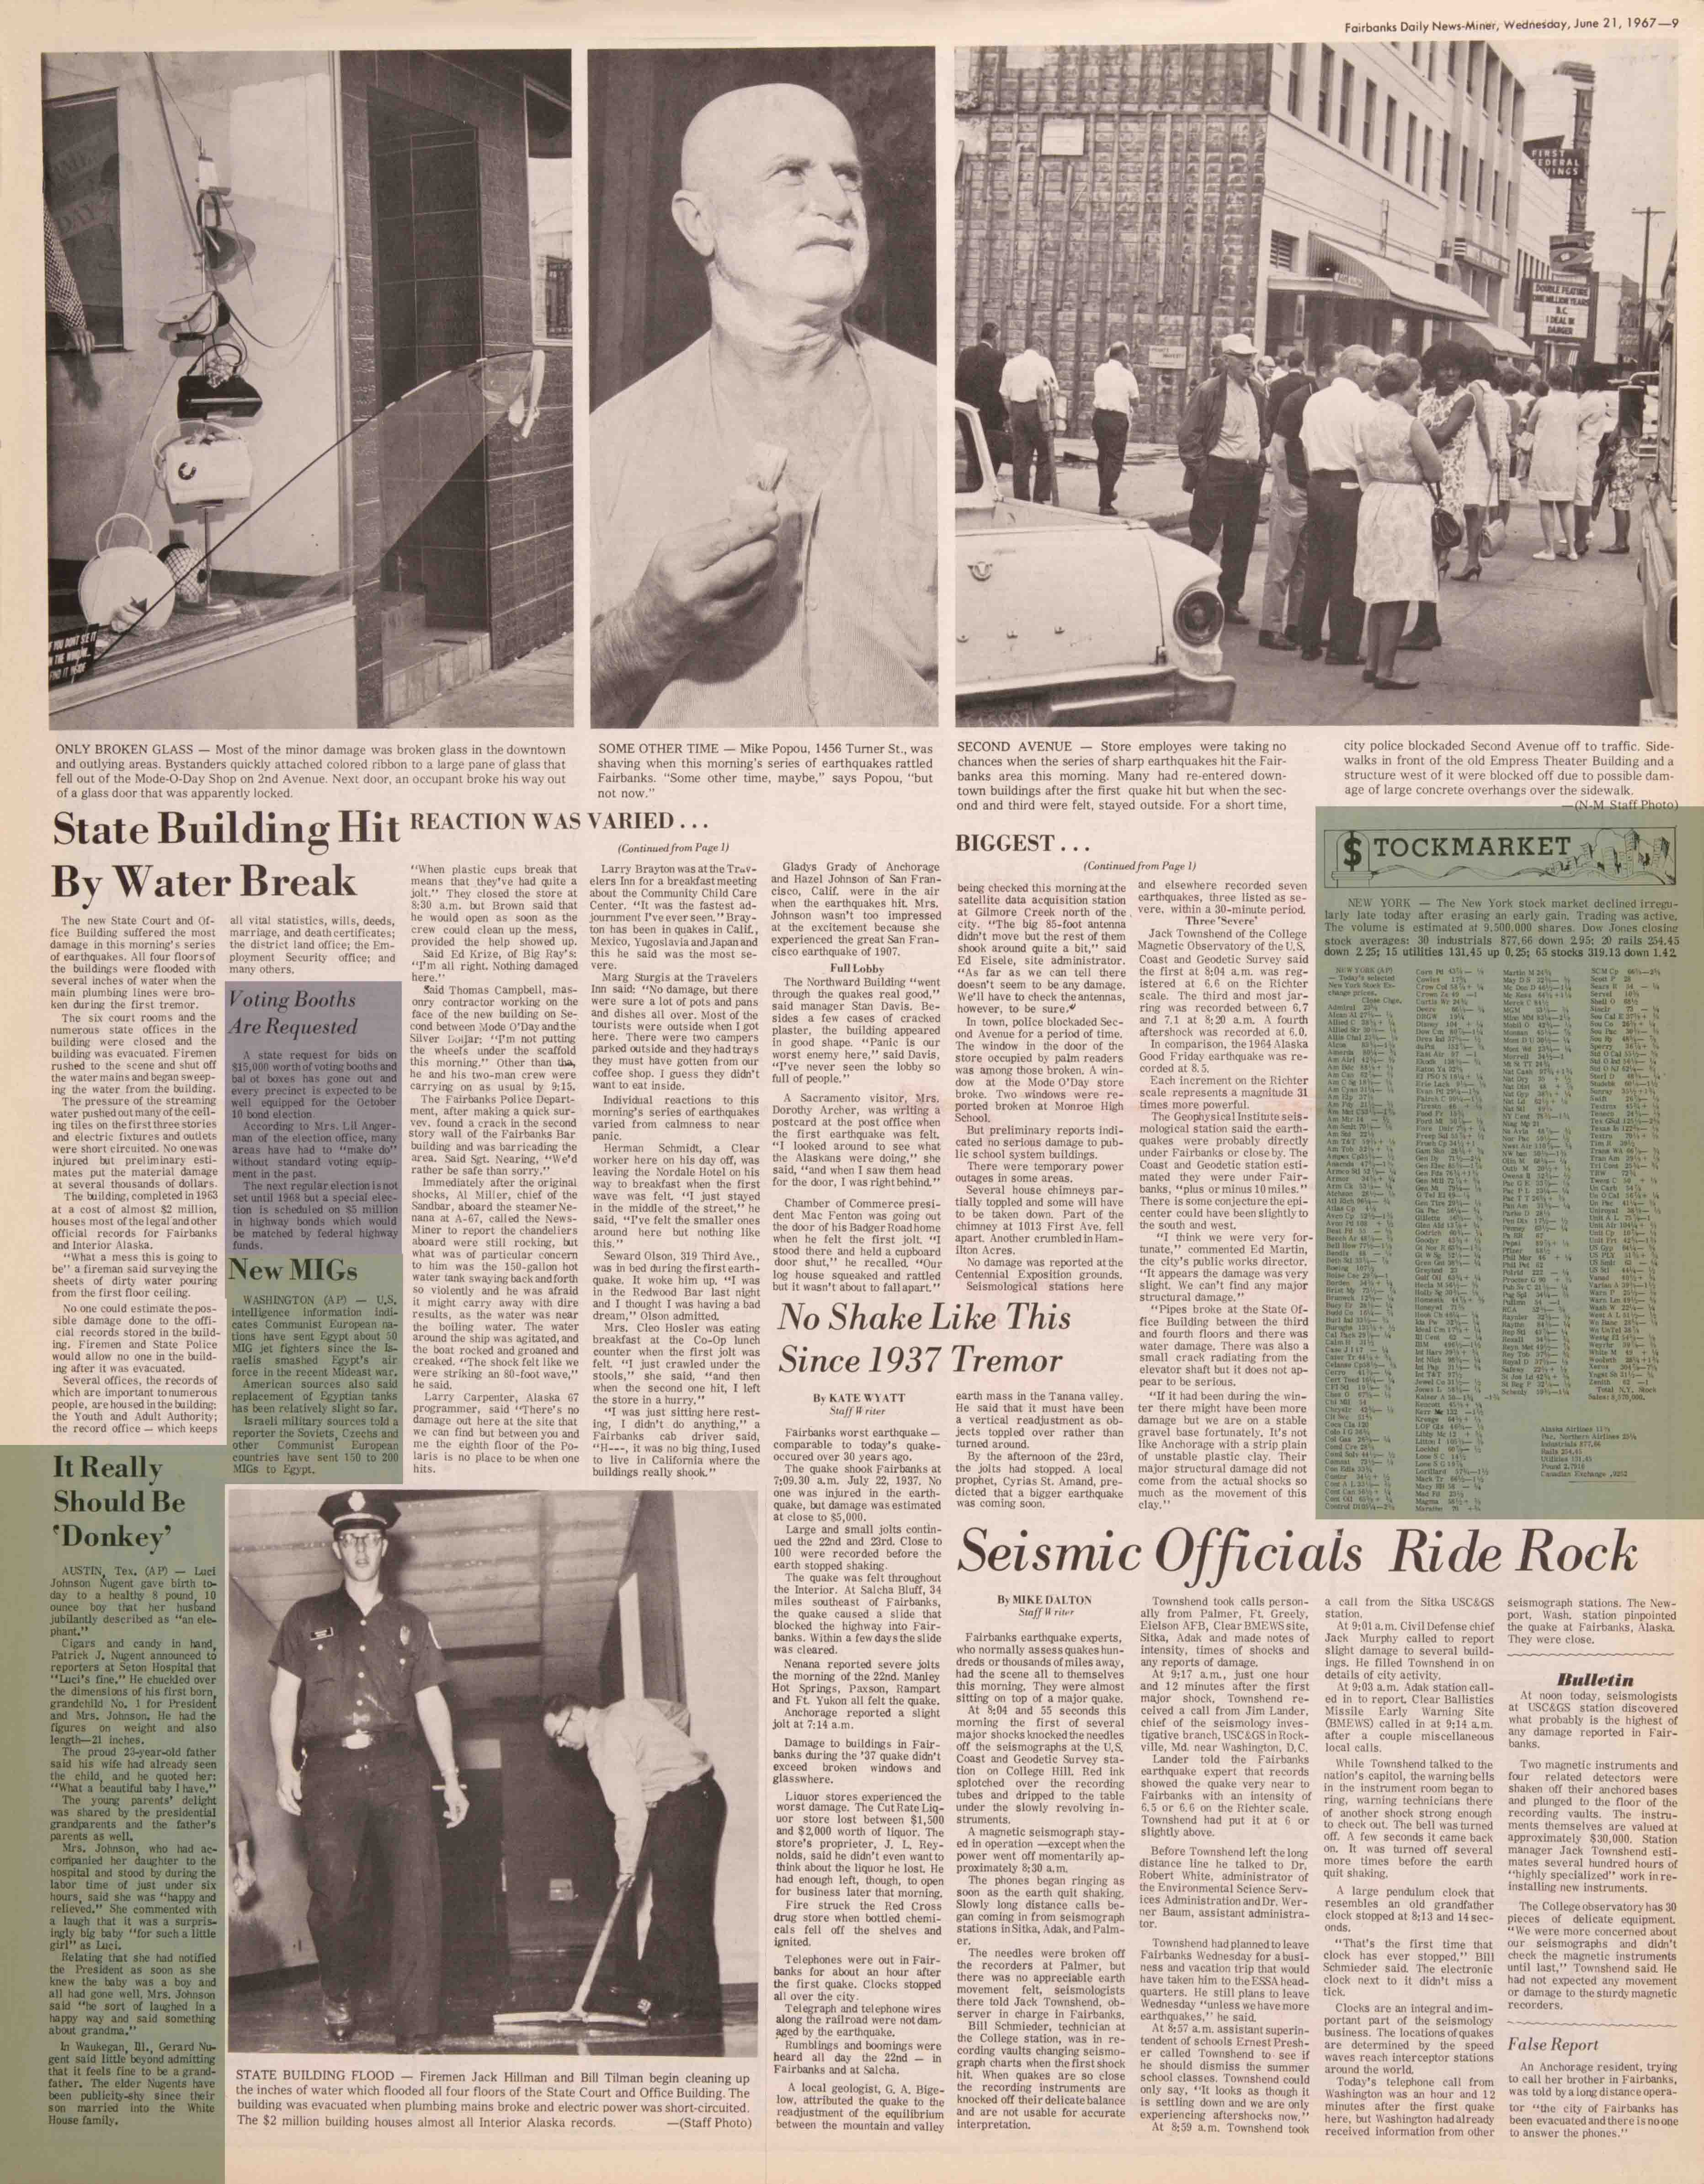 1967 June 21, Fairbanks Daily News-Miner (pg 9)